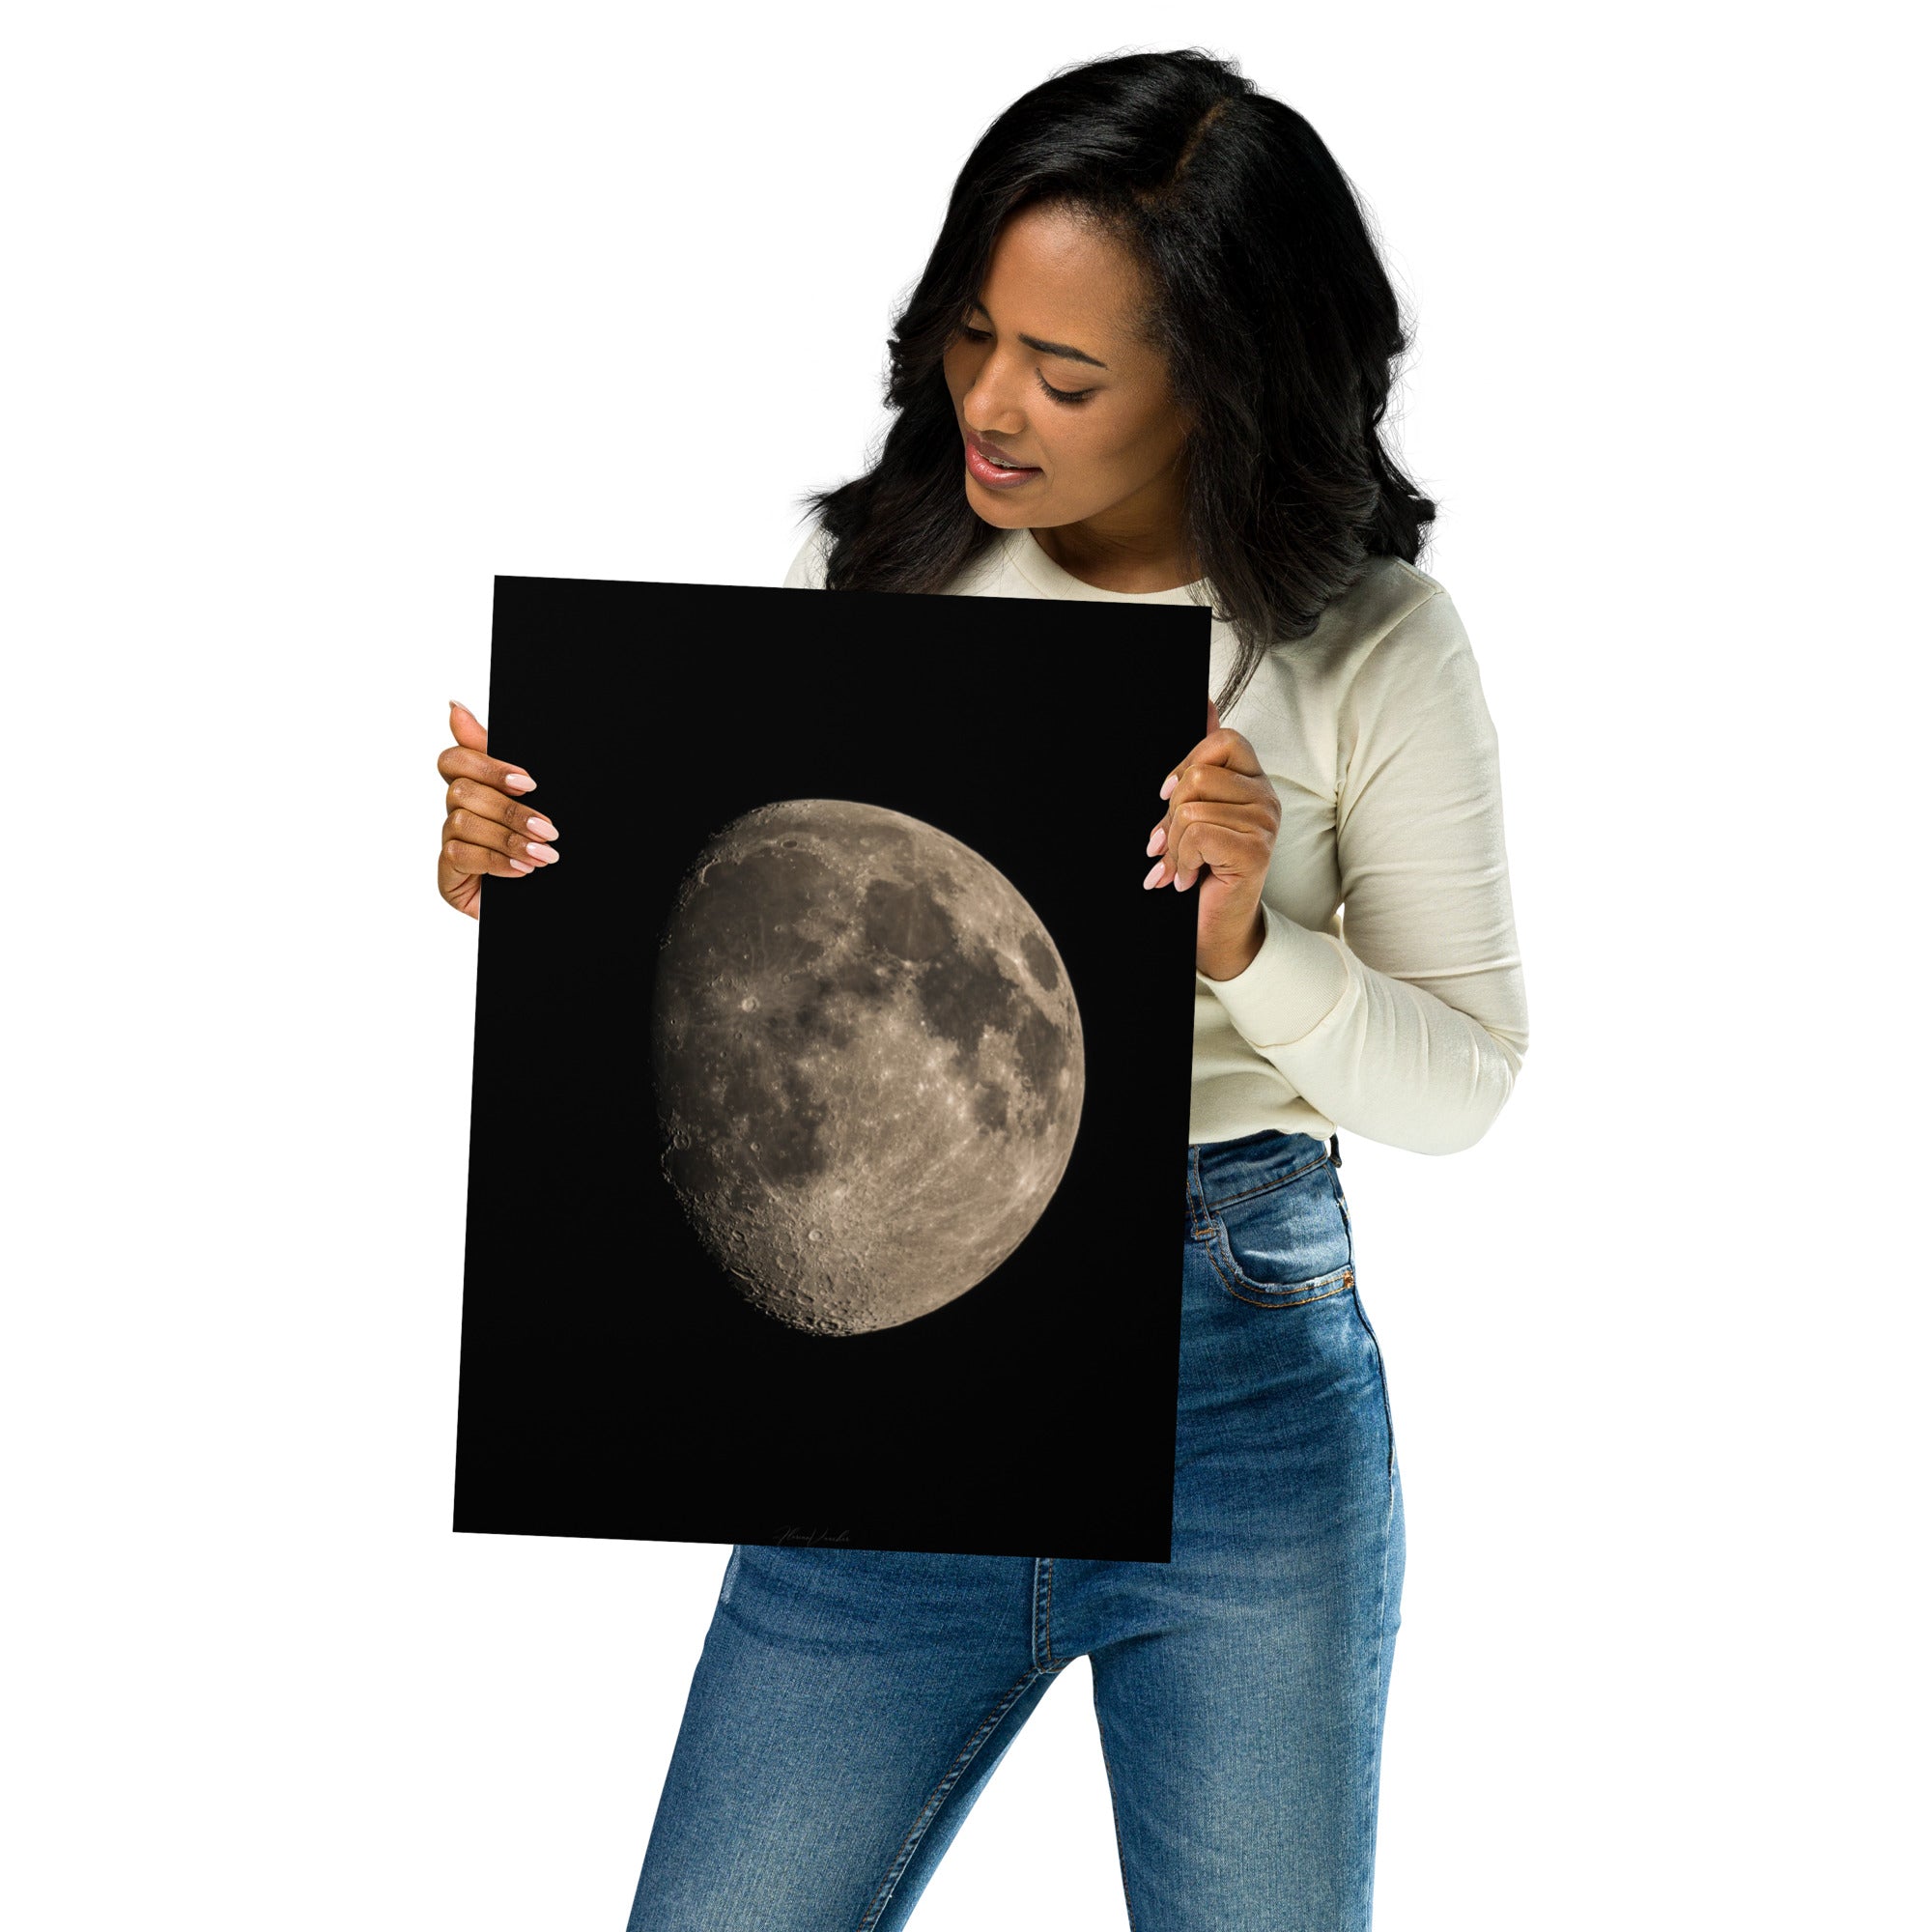 Image détaillée de la Lune montrant une moitié brillante et une moitié engloutie par l'ombre, une œuvre d'art photographique réalisée par Florian Vaucher.